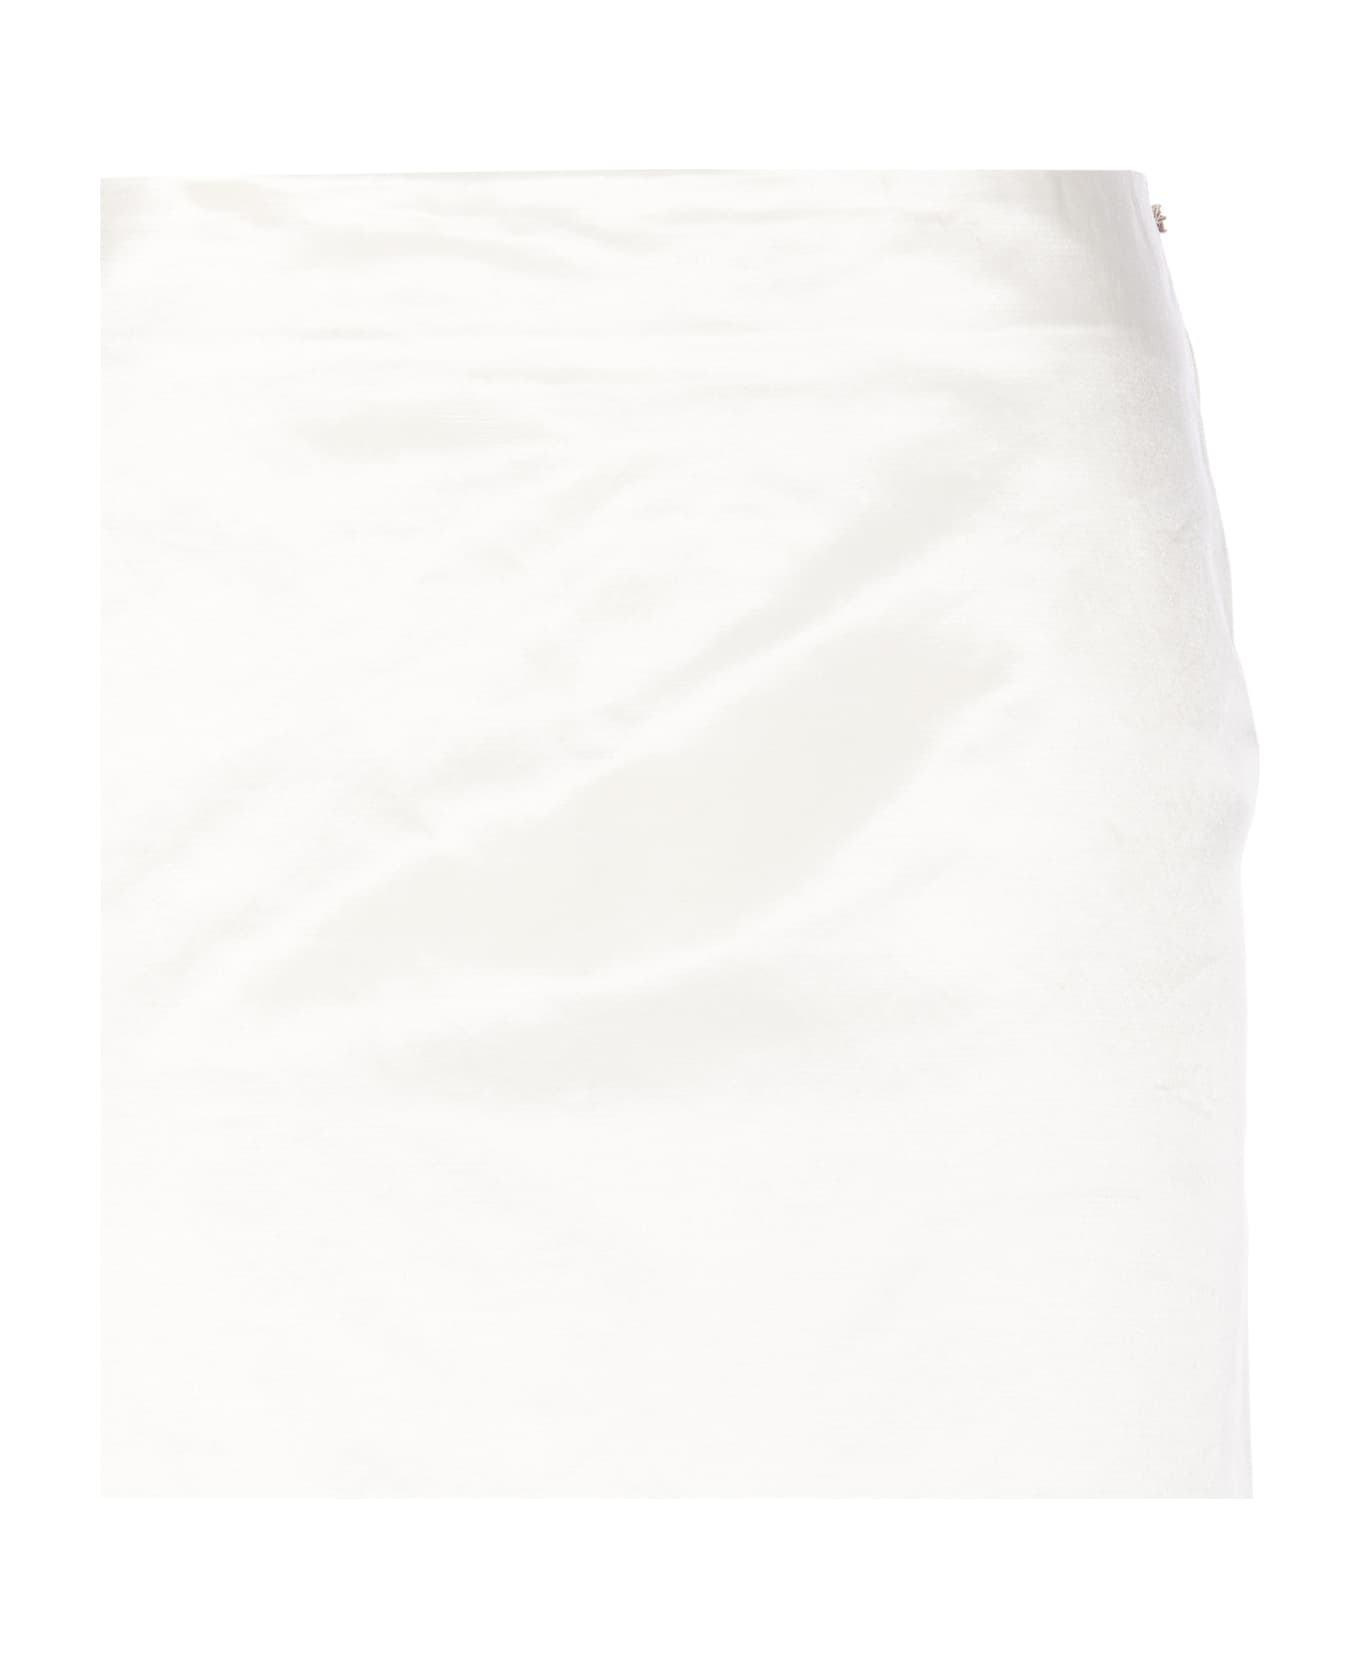 SportMax Long Skirt In Technical Satin - White